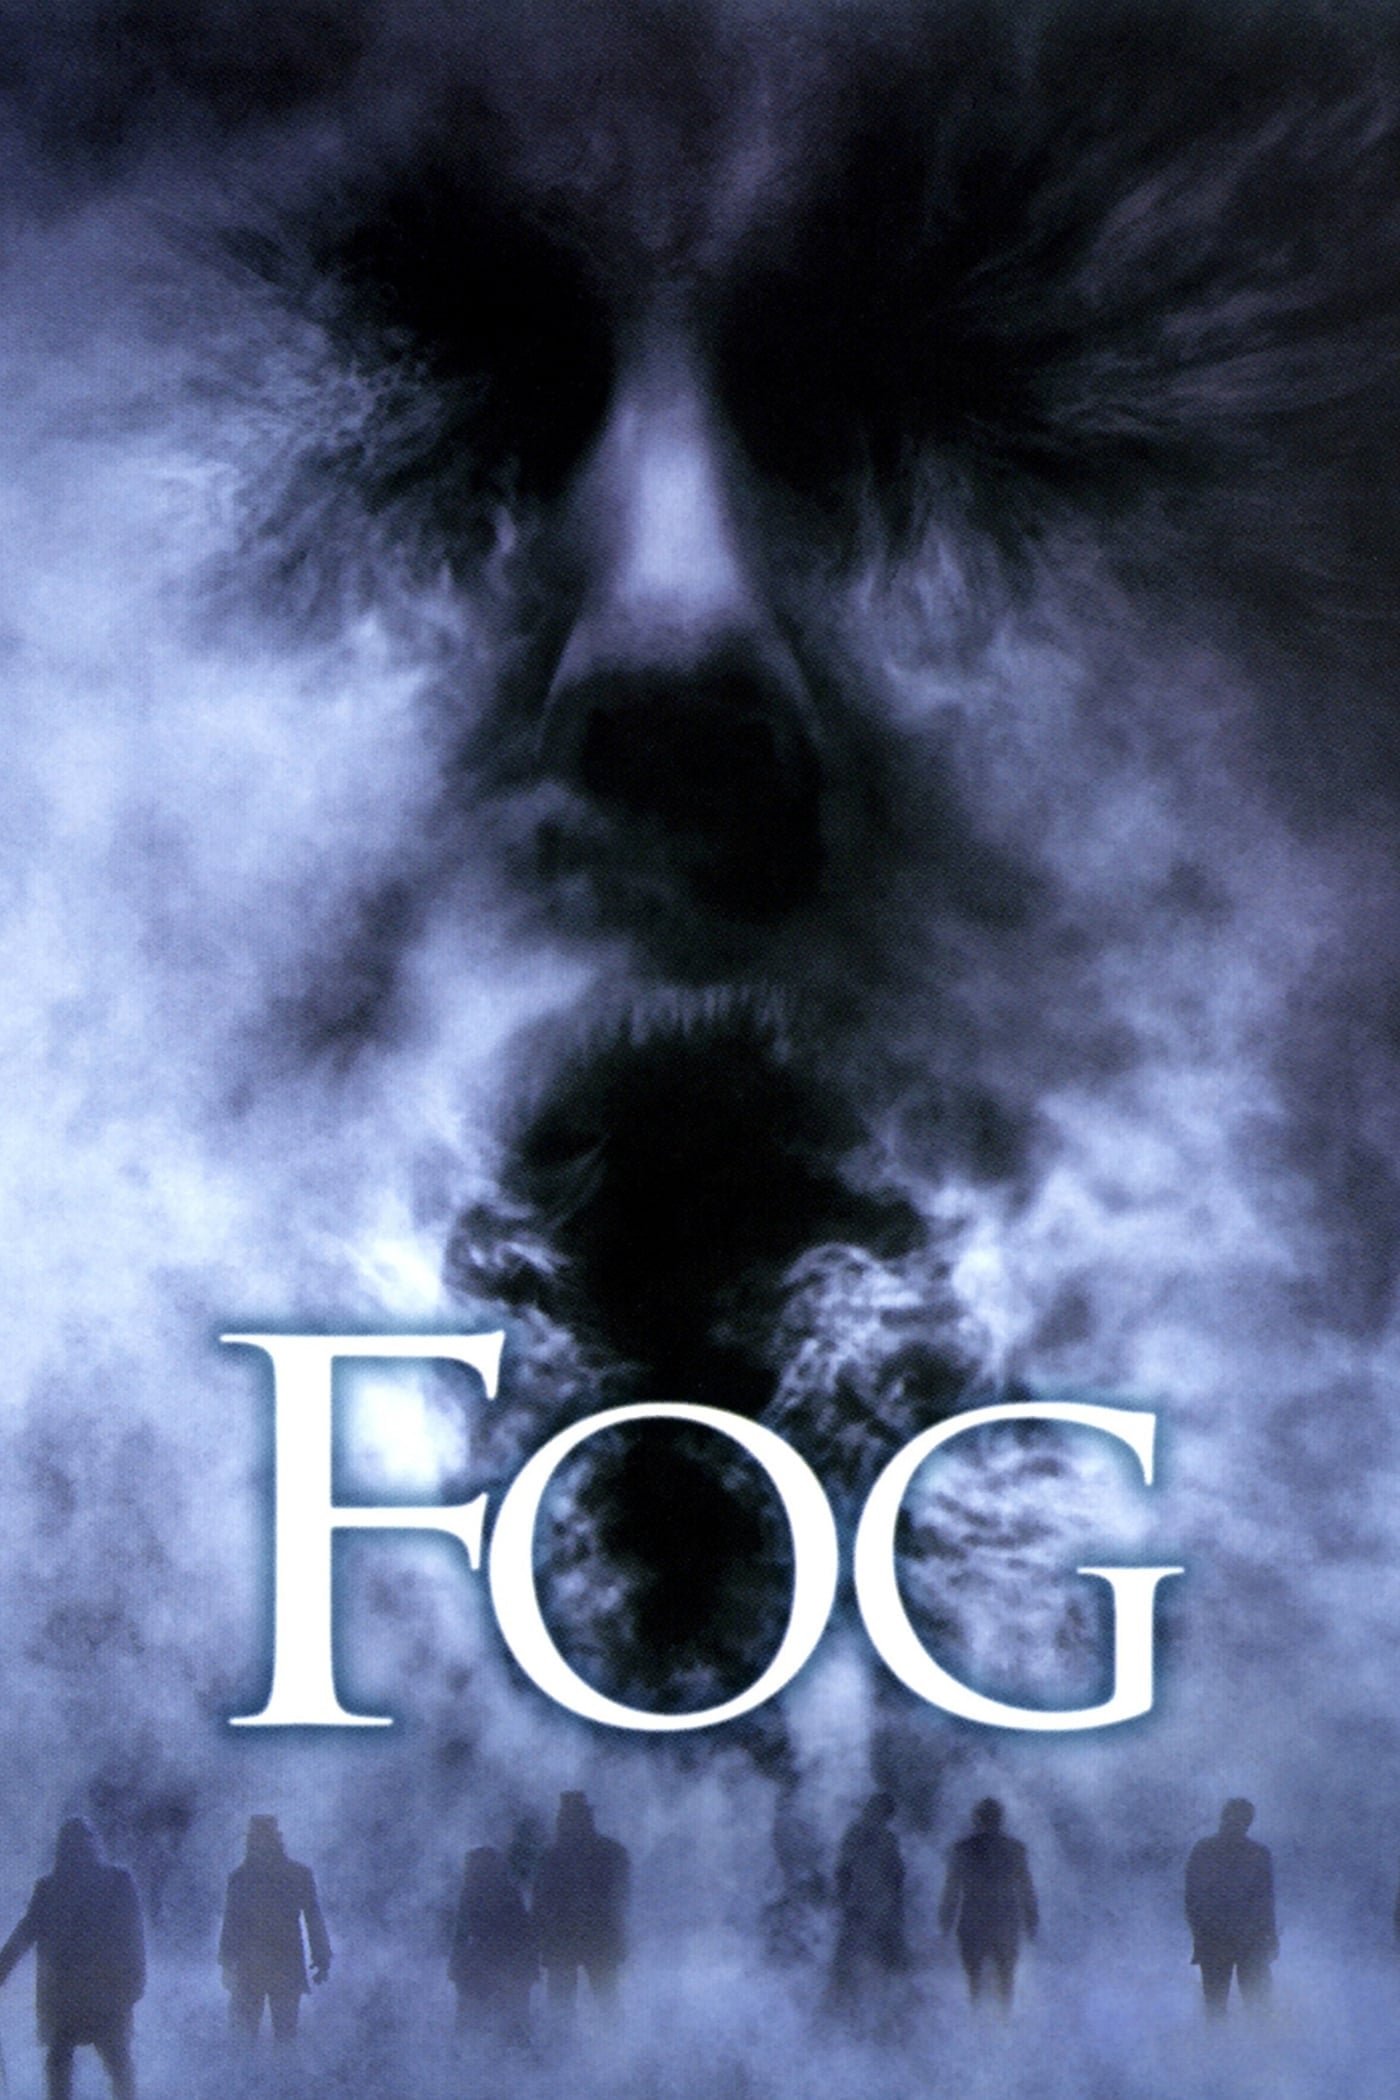 The Fog (2005)